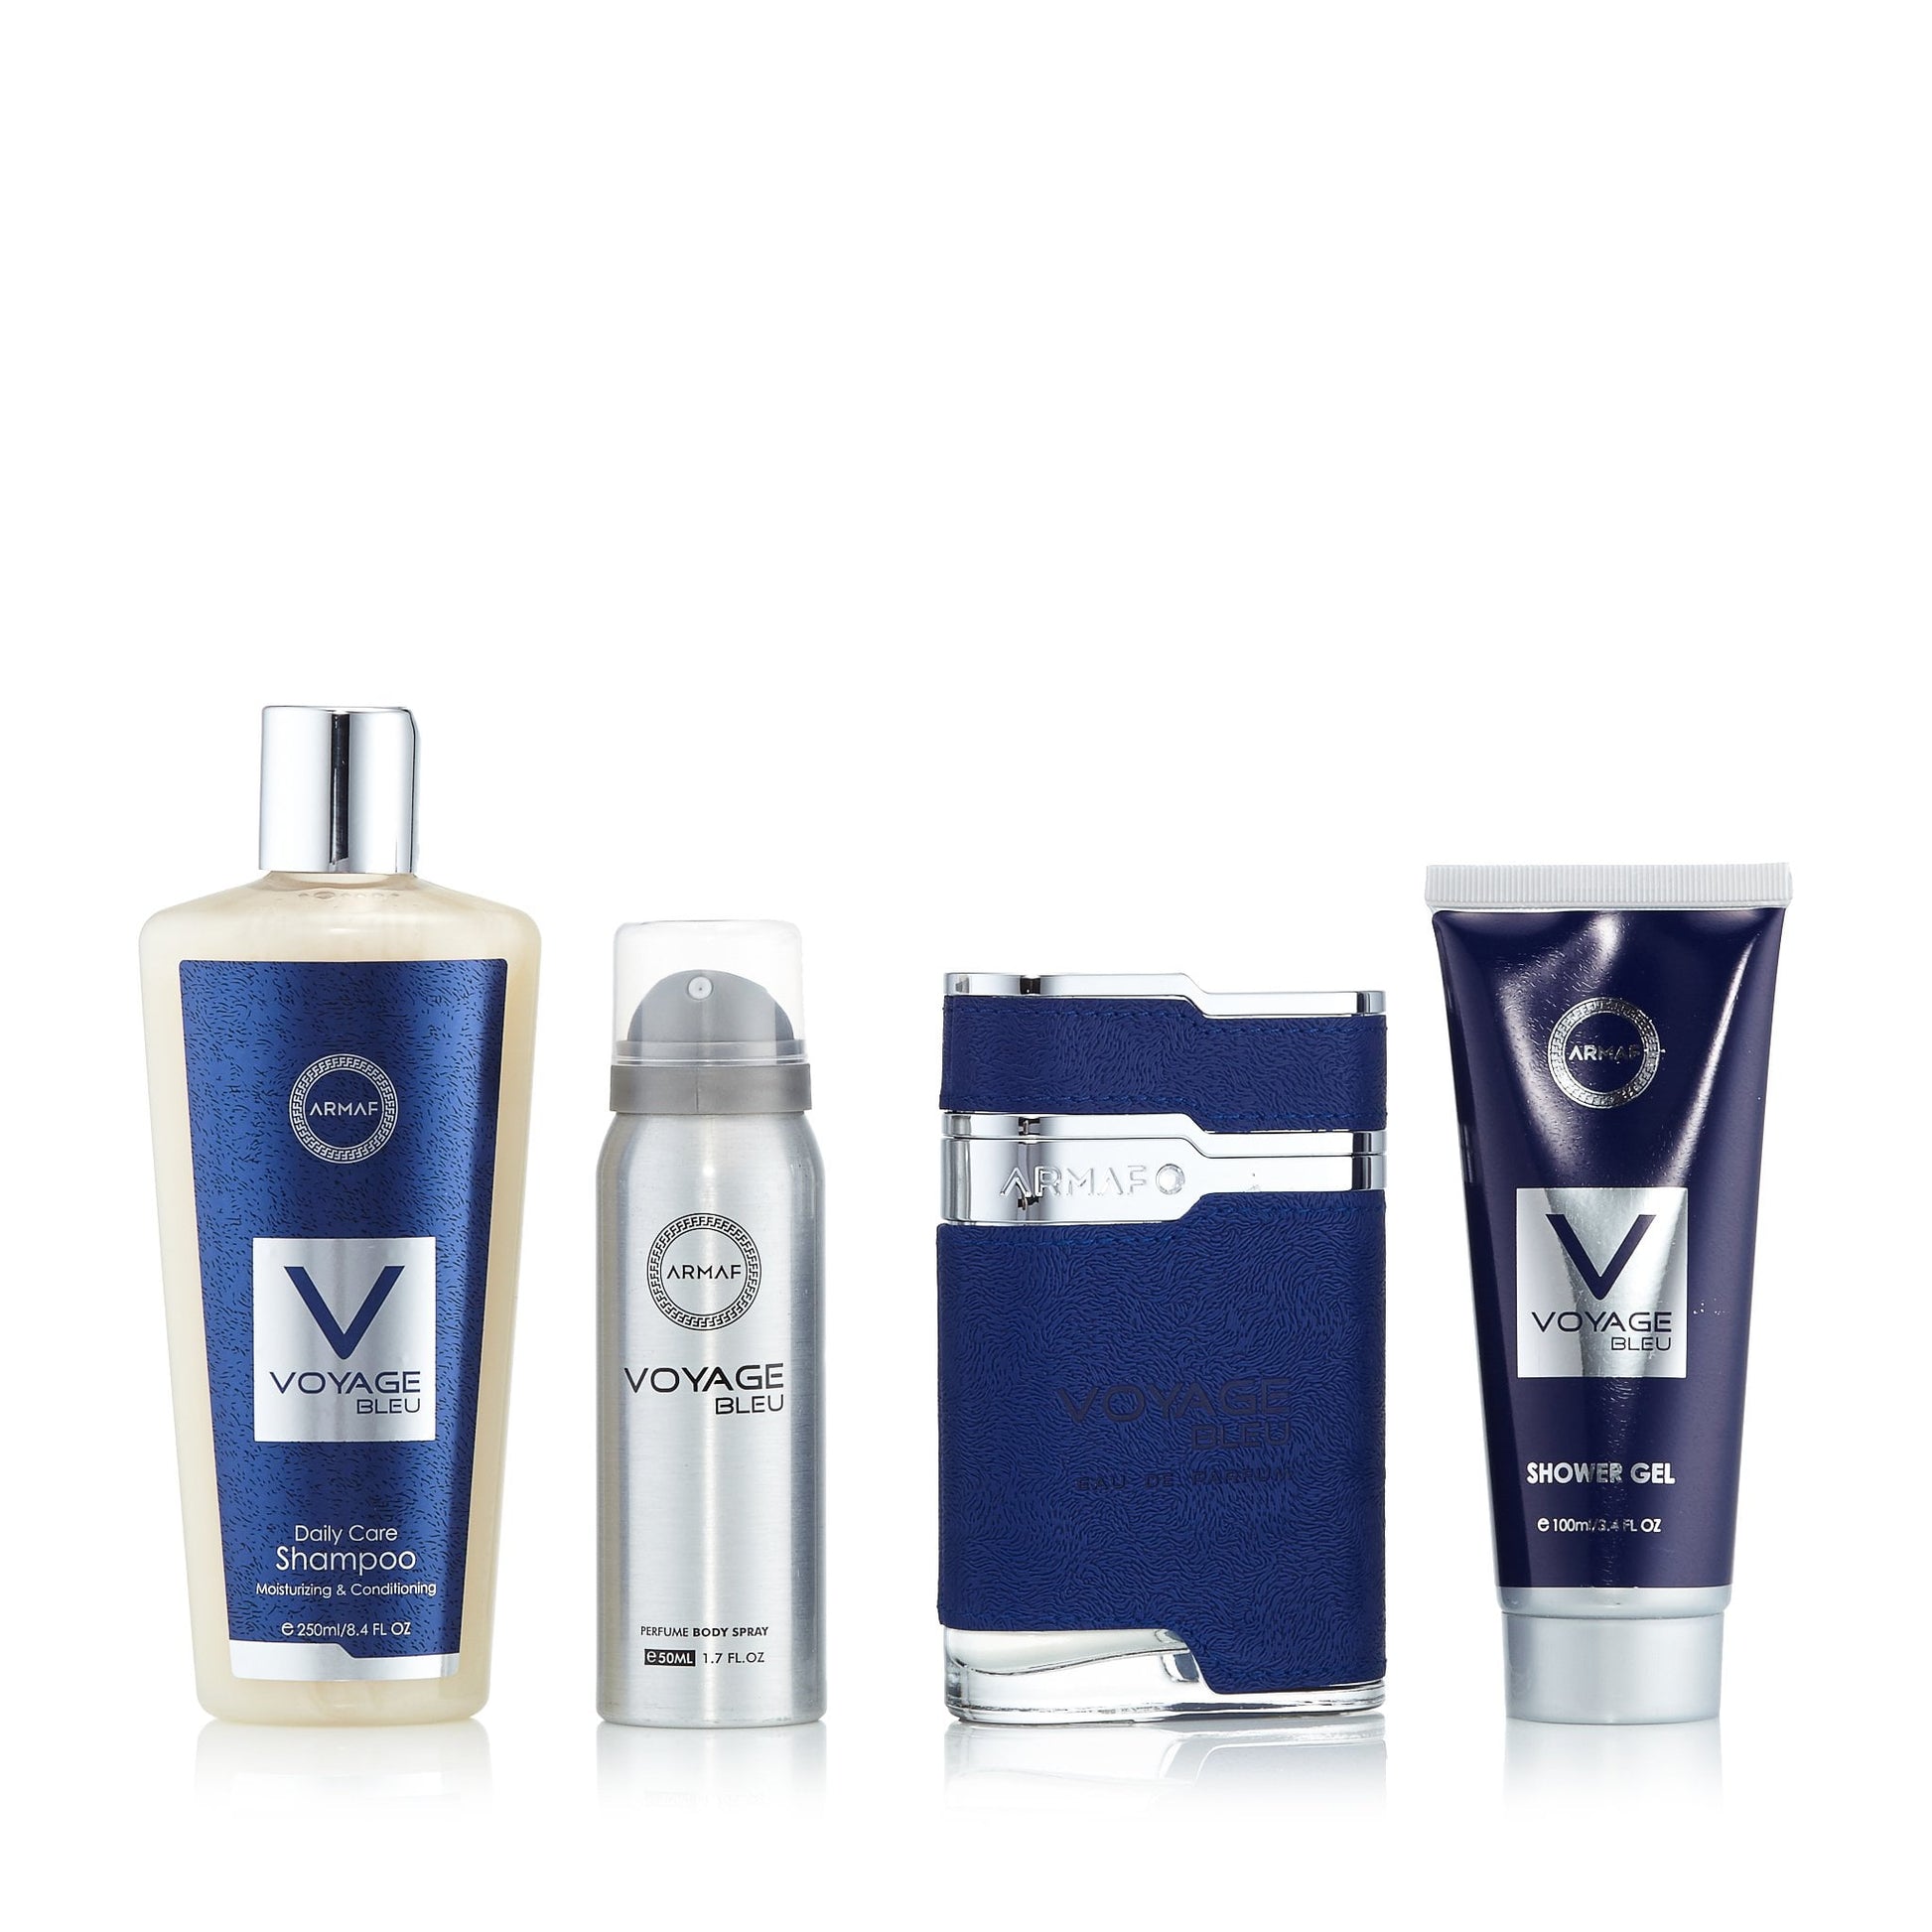 Voyage Bleu Gift Set for Men, Product image 1